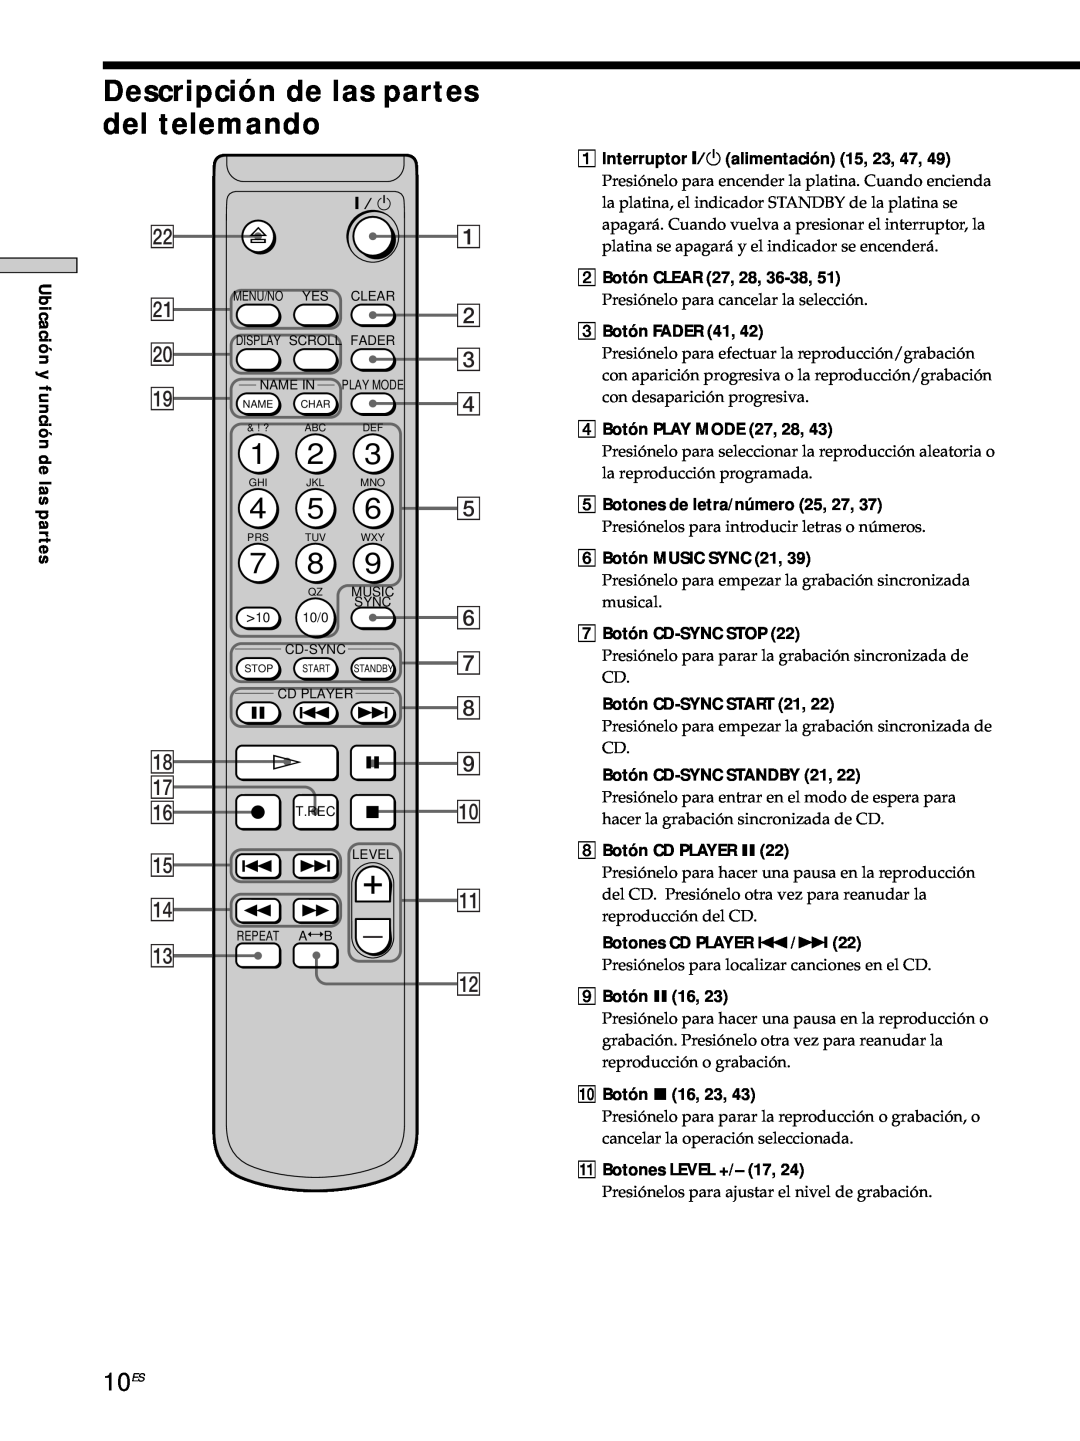 Sony MDS-JE530 manual Descripción de las partes del telemando, 10ES, qd qs 